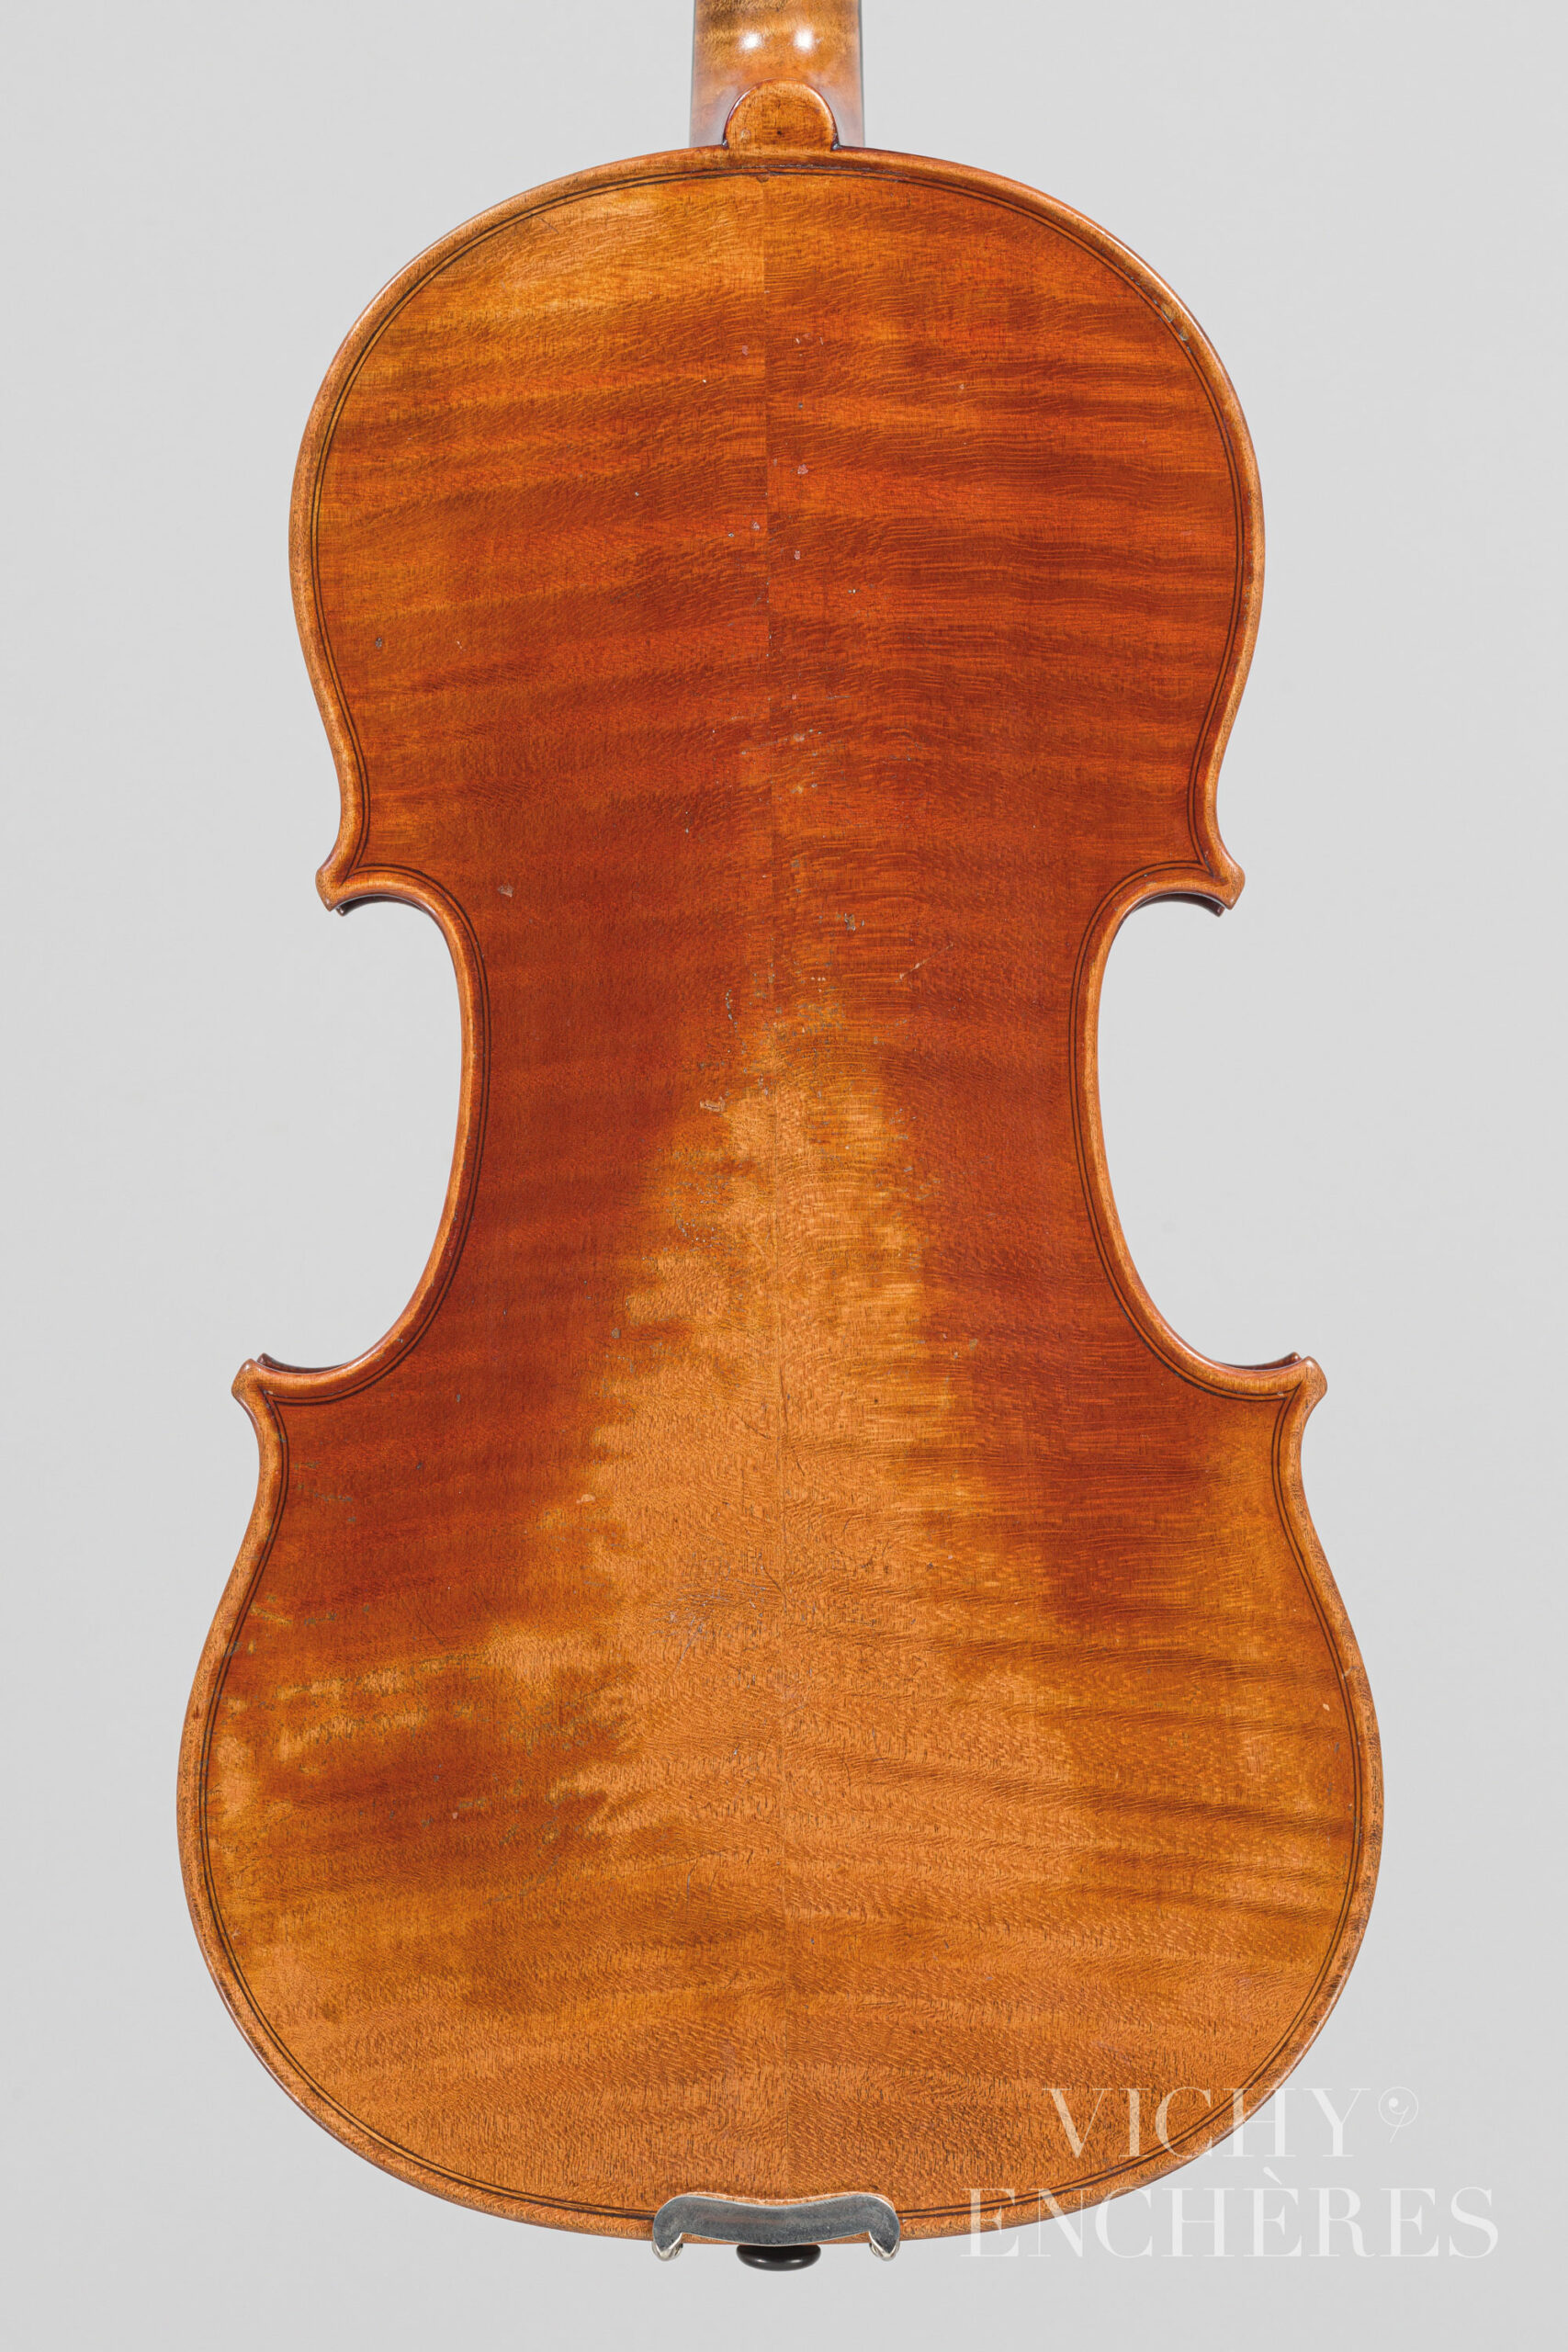 Violon de Georges CHANOT Instrument mis en vente par Vichy Enchères le 1er décembre 2022 © Christophe Darbelet